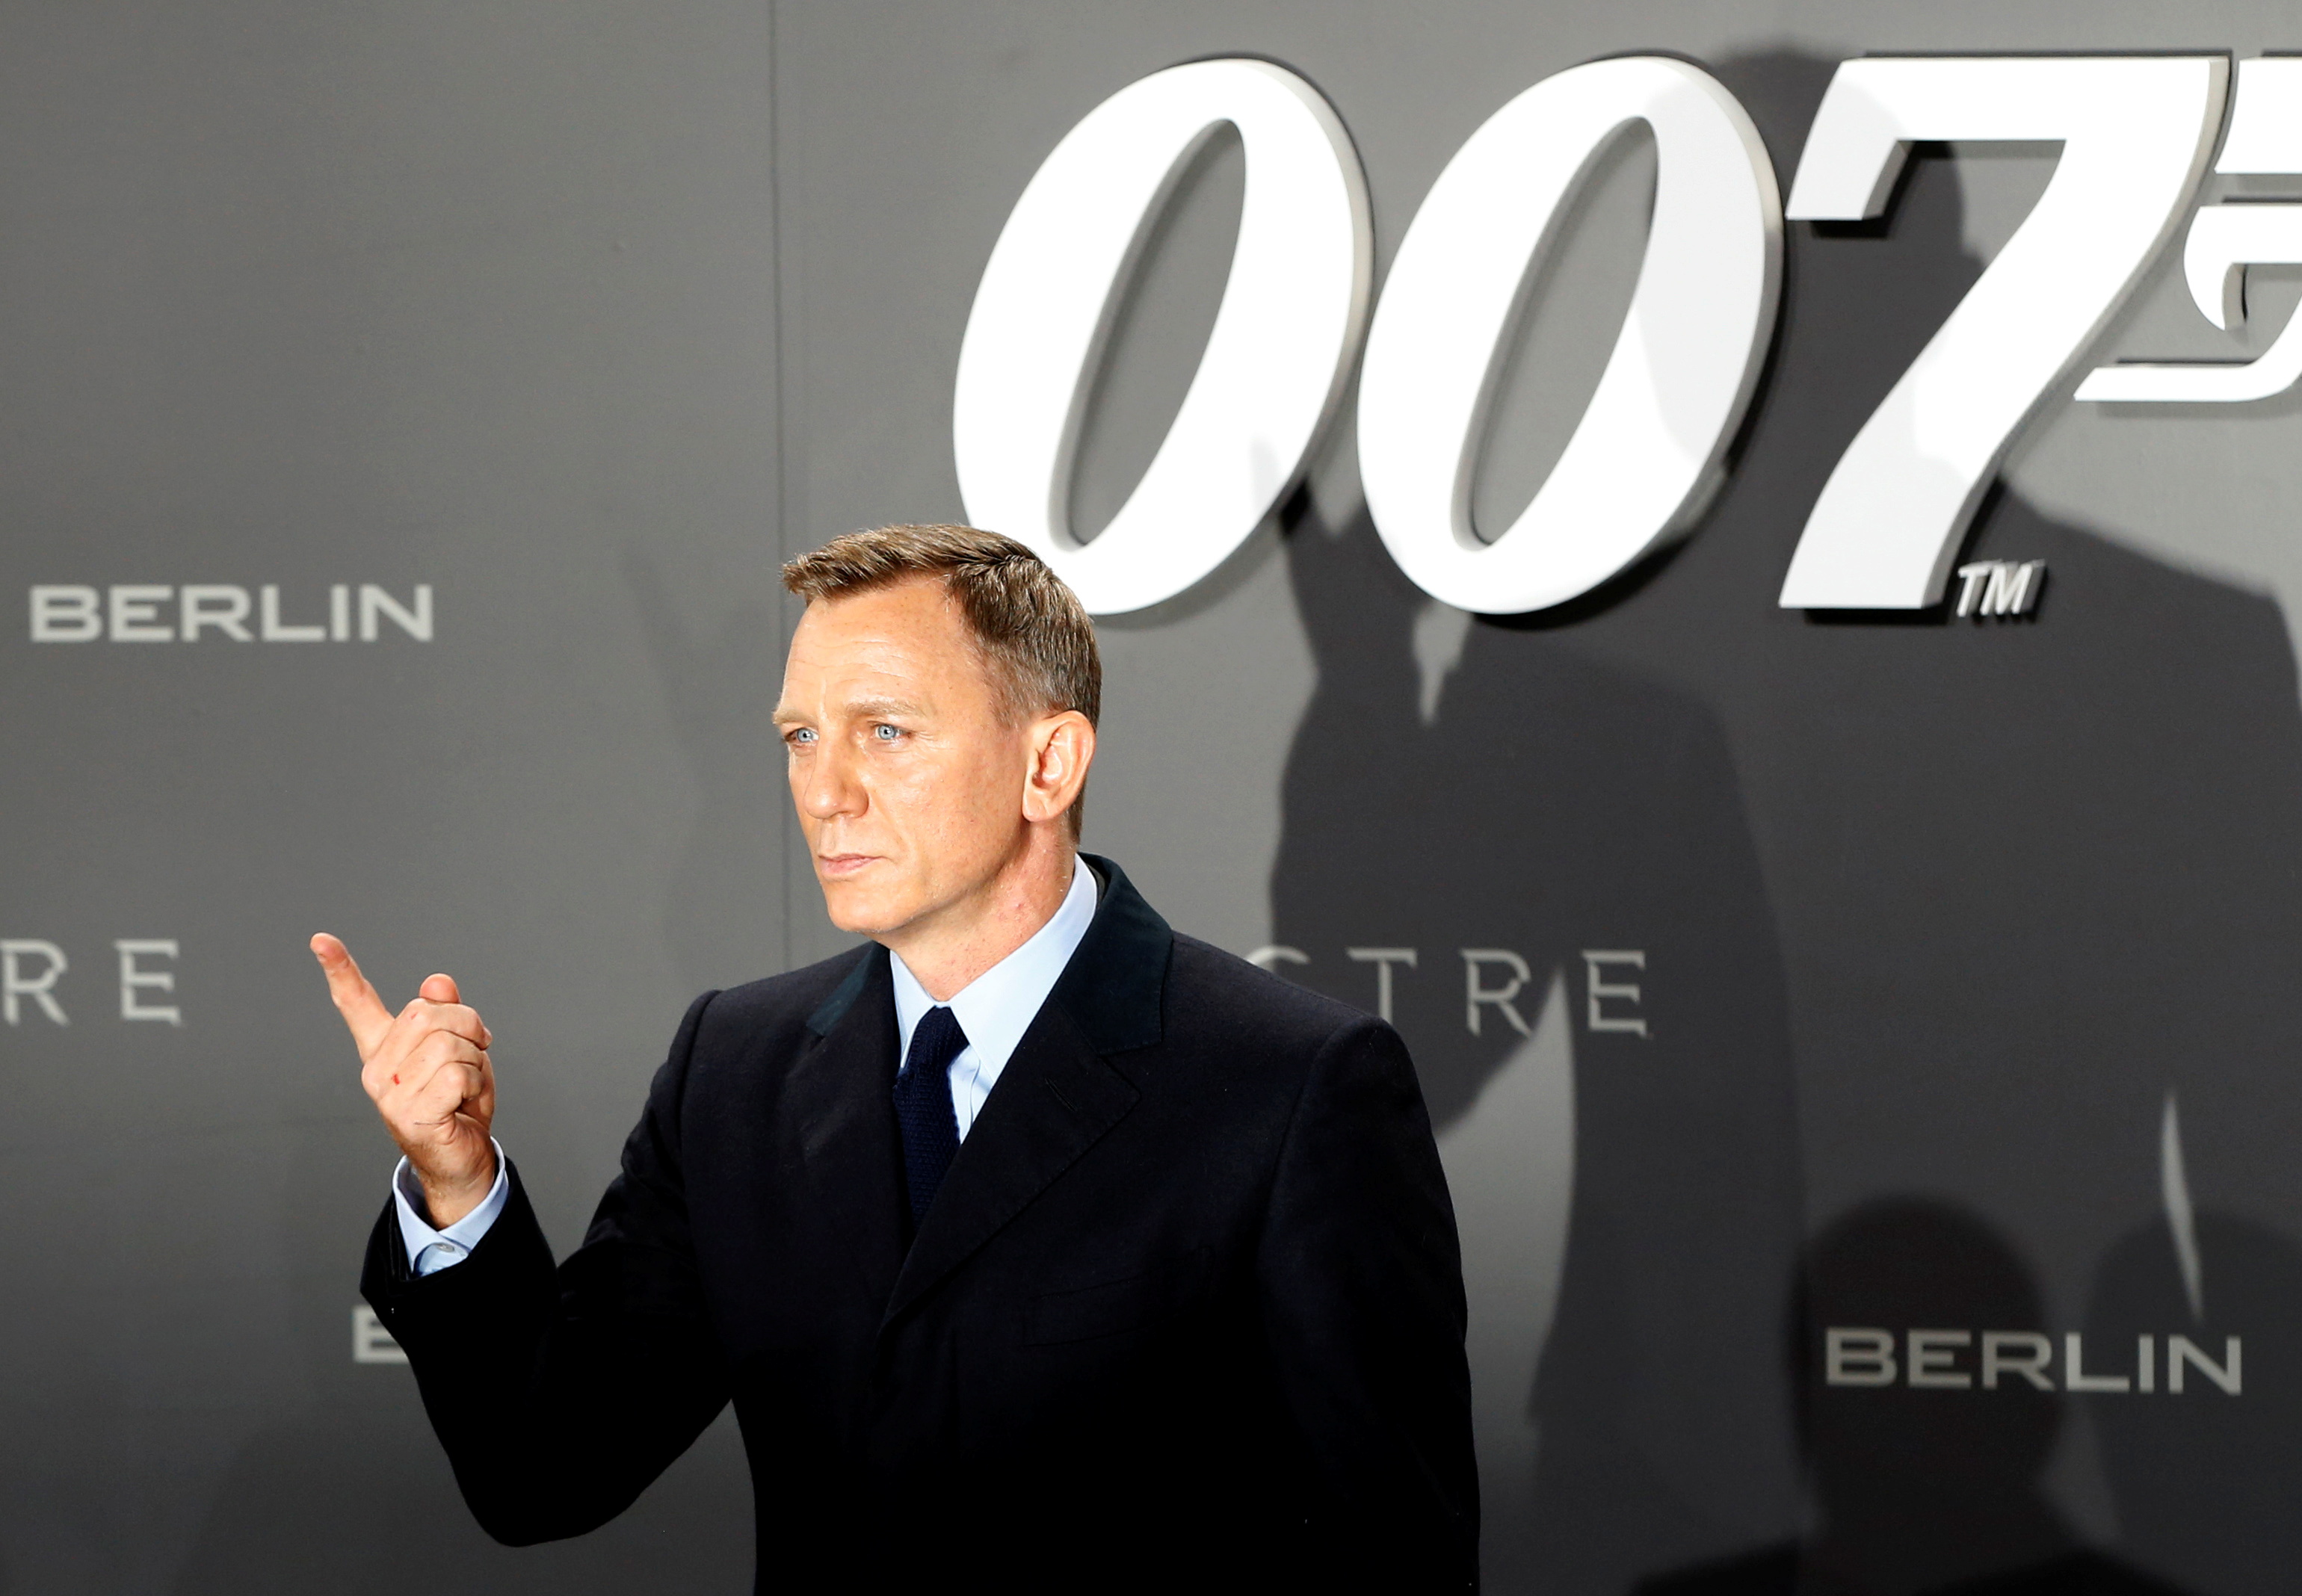 Todas Las Peliculas De James Bond En Amazon Prime Video Tn